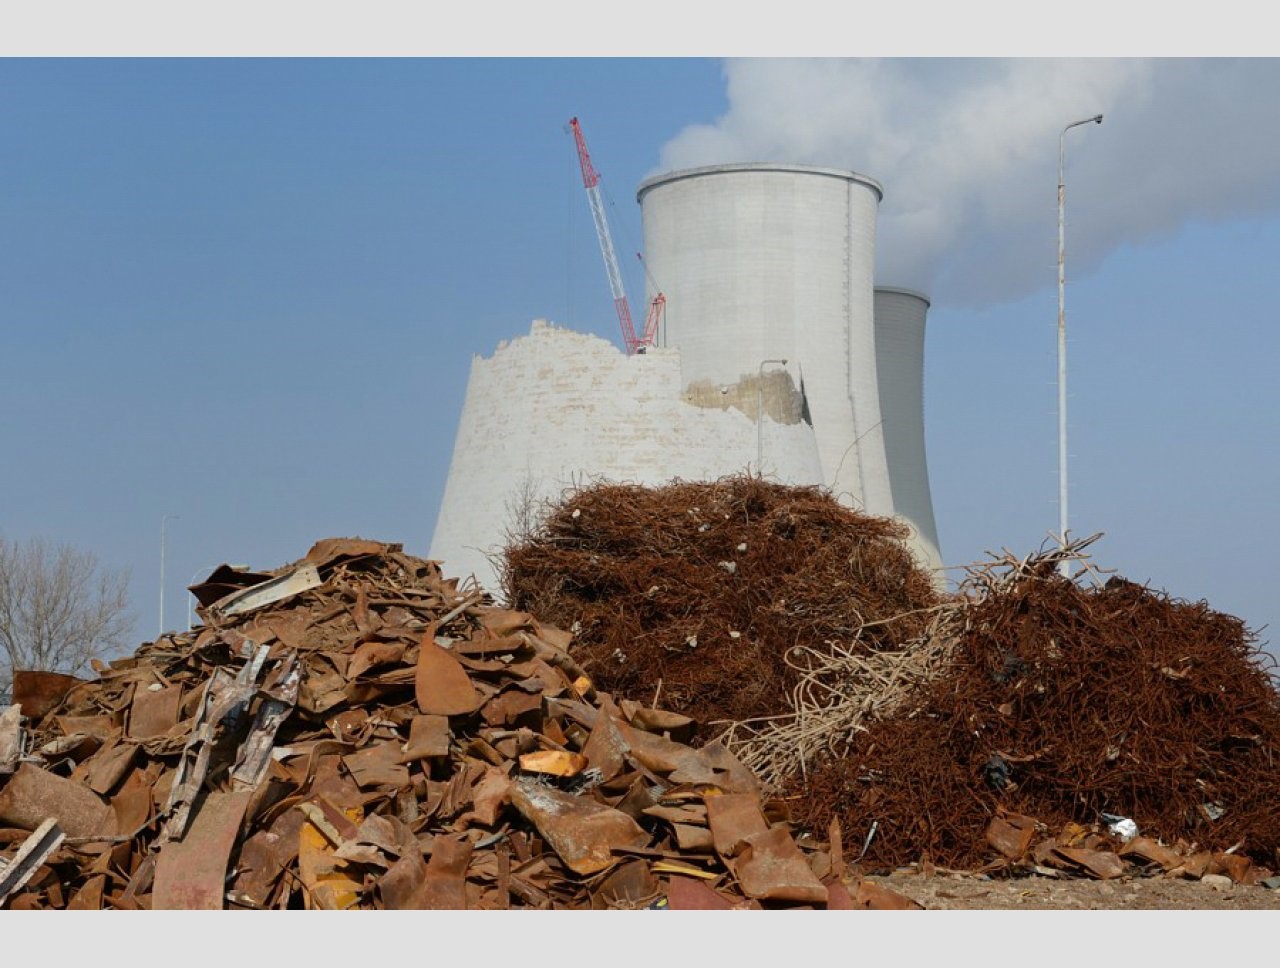 Bourání chladících věží elektrárny Jaslovské Bohunice V1 a třídění železného odpadu (zdroj JAVYS)